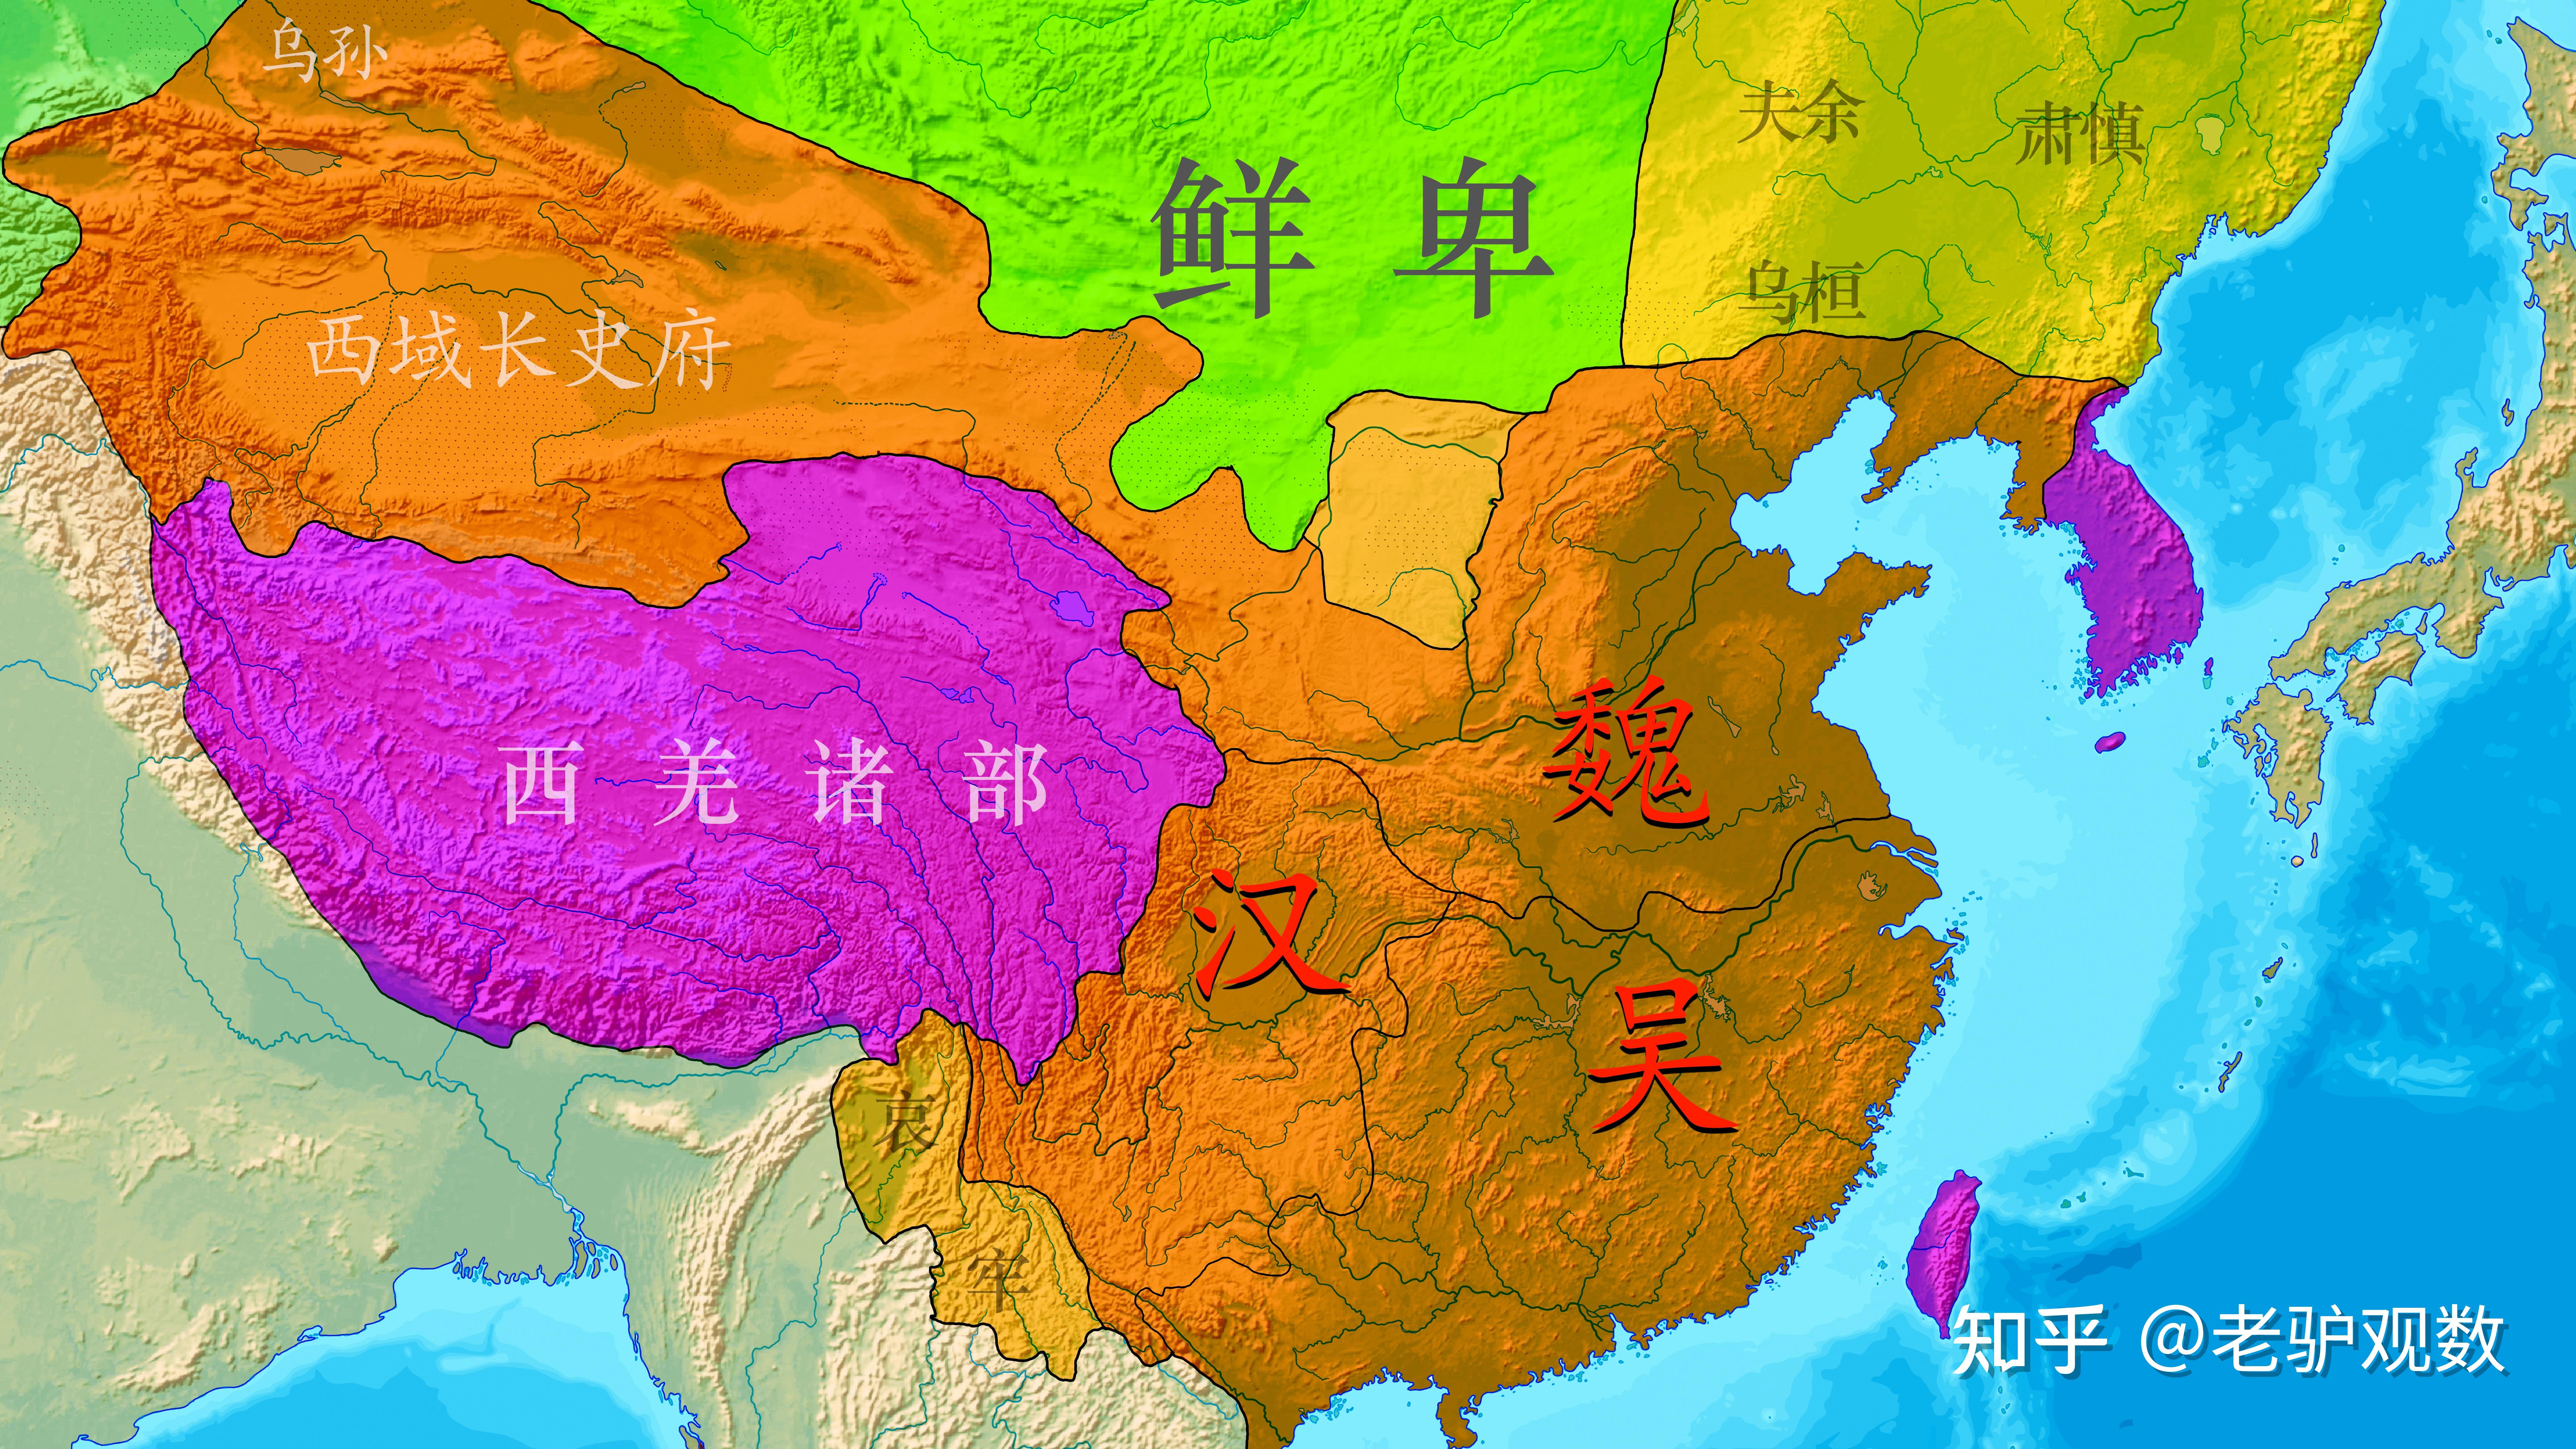 唐朝的安史之乱,与宋朝重文轻武的形成有何渊源? 